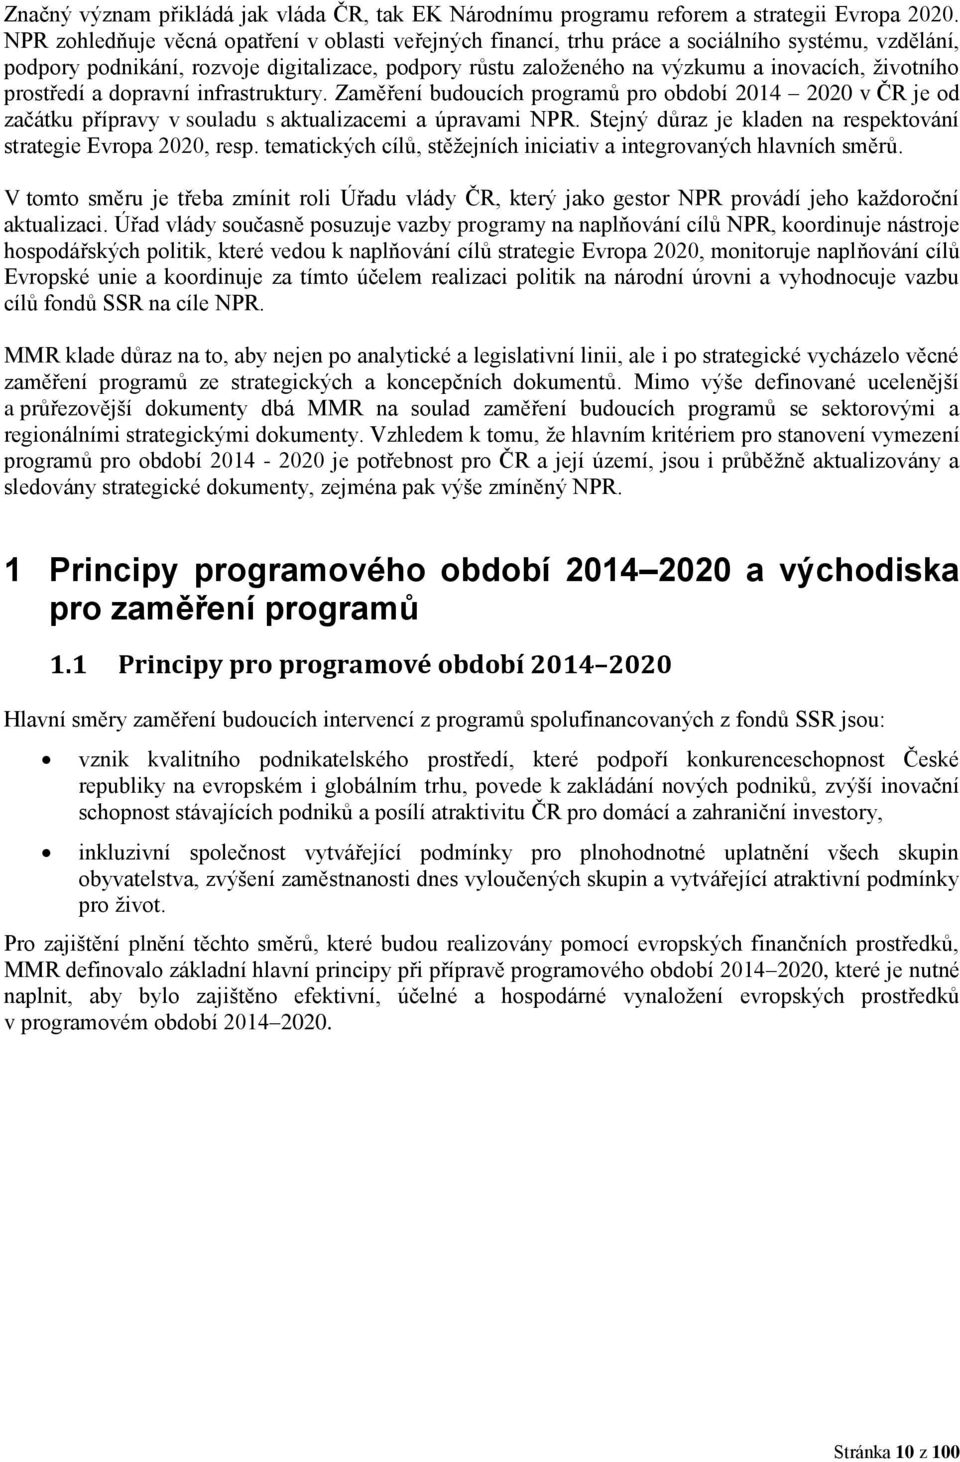 životního prostředí a dopravní infrastruktury. Zaměření budoucích programů pro období 2014 2020 v ČR je od začátku přípravy v souladu s aktualizacemi a úpravami NPR.